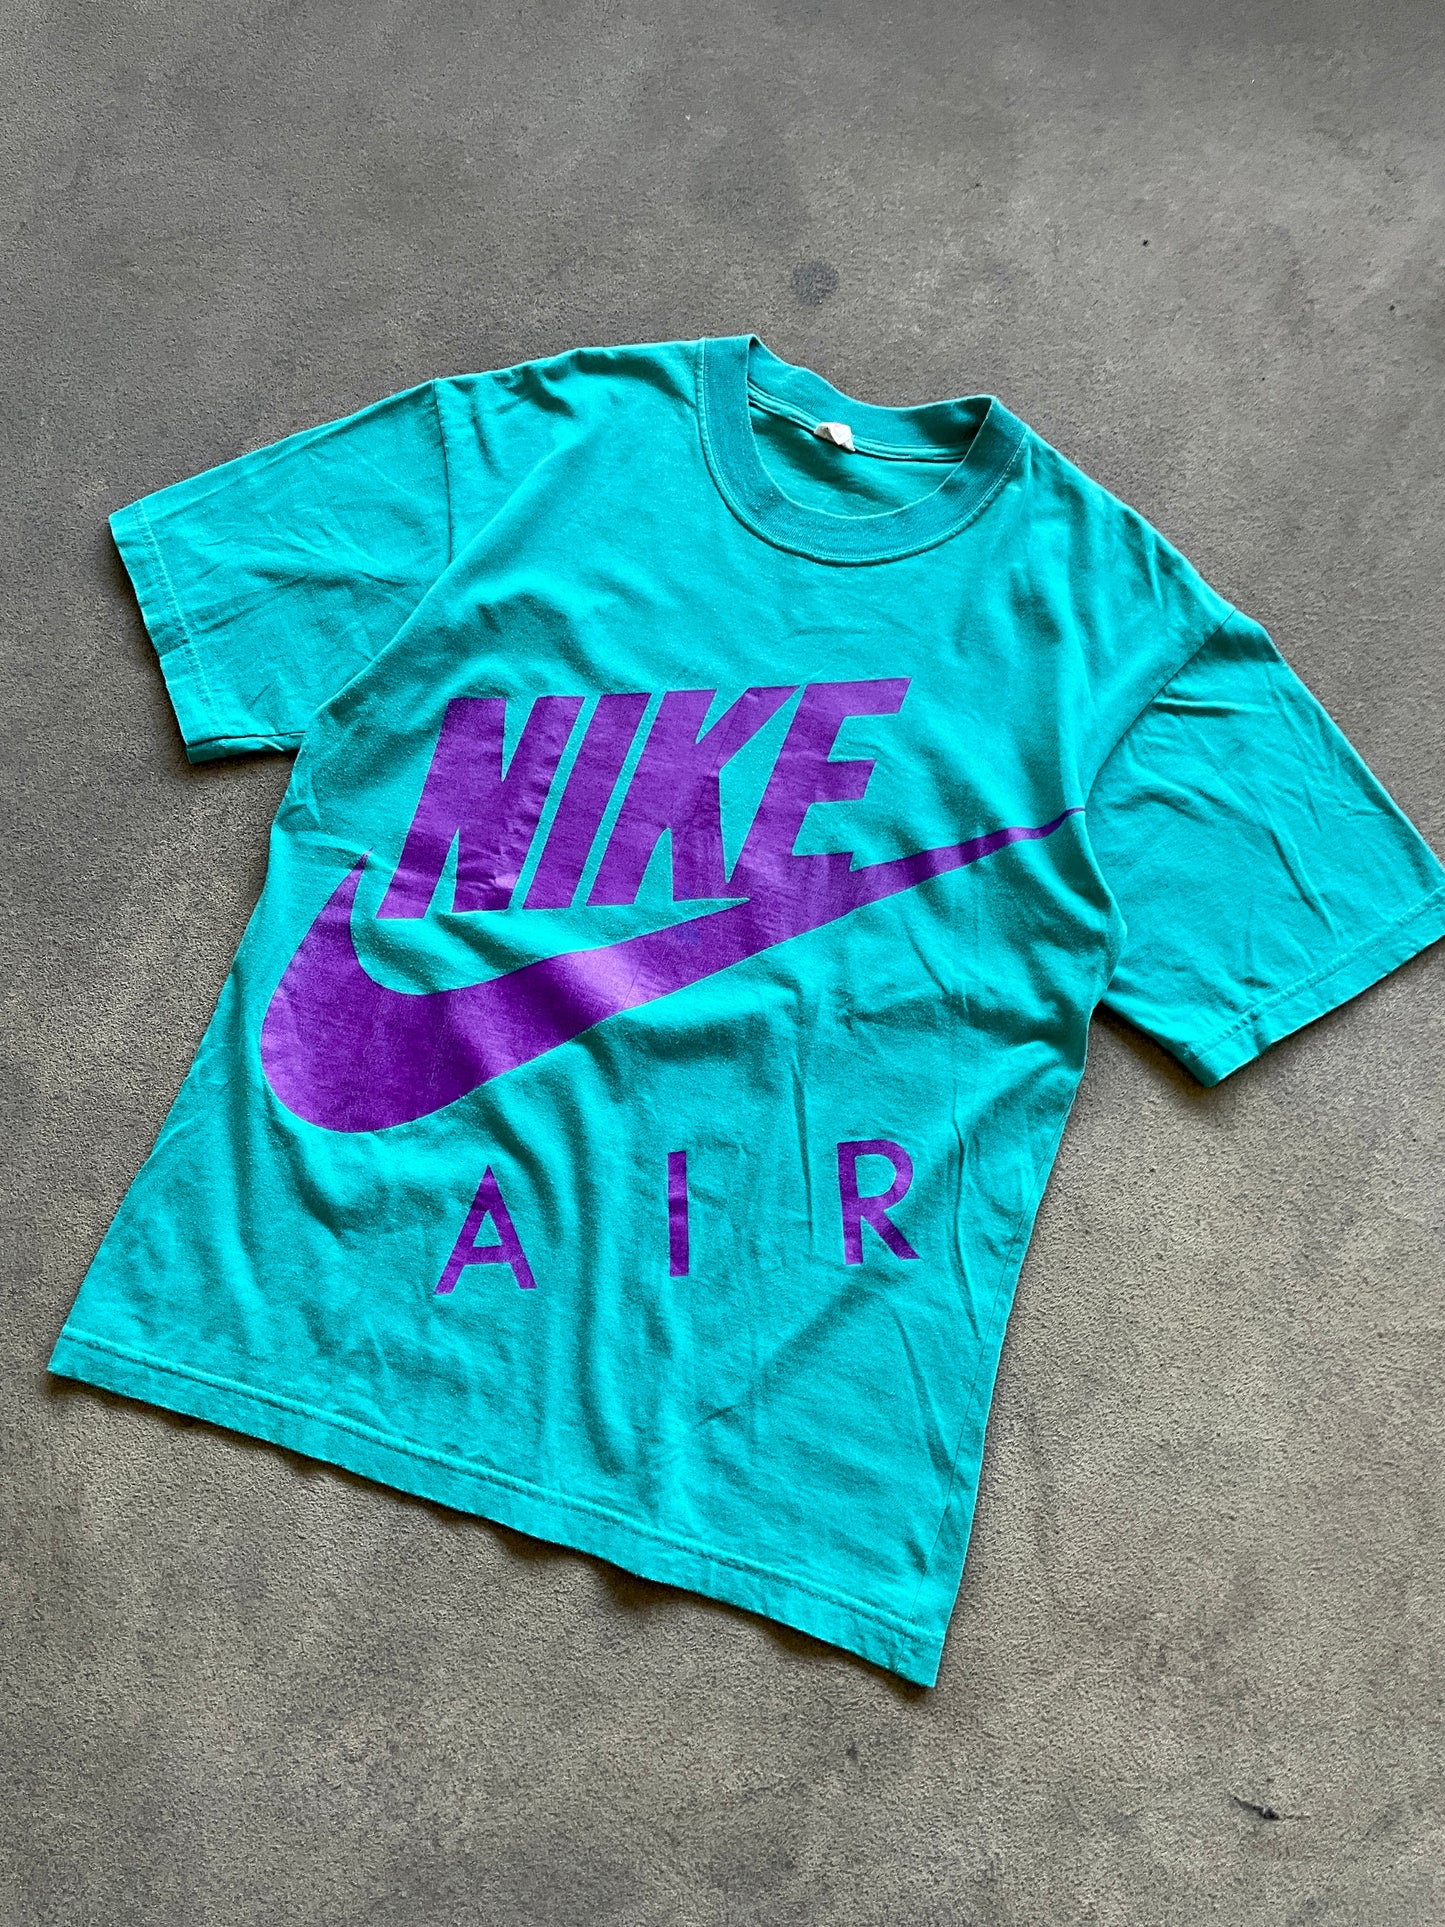 Vintage Nike Air Tee (fits Large)